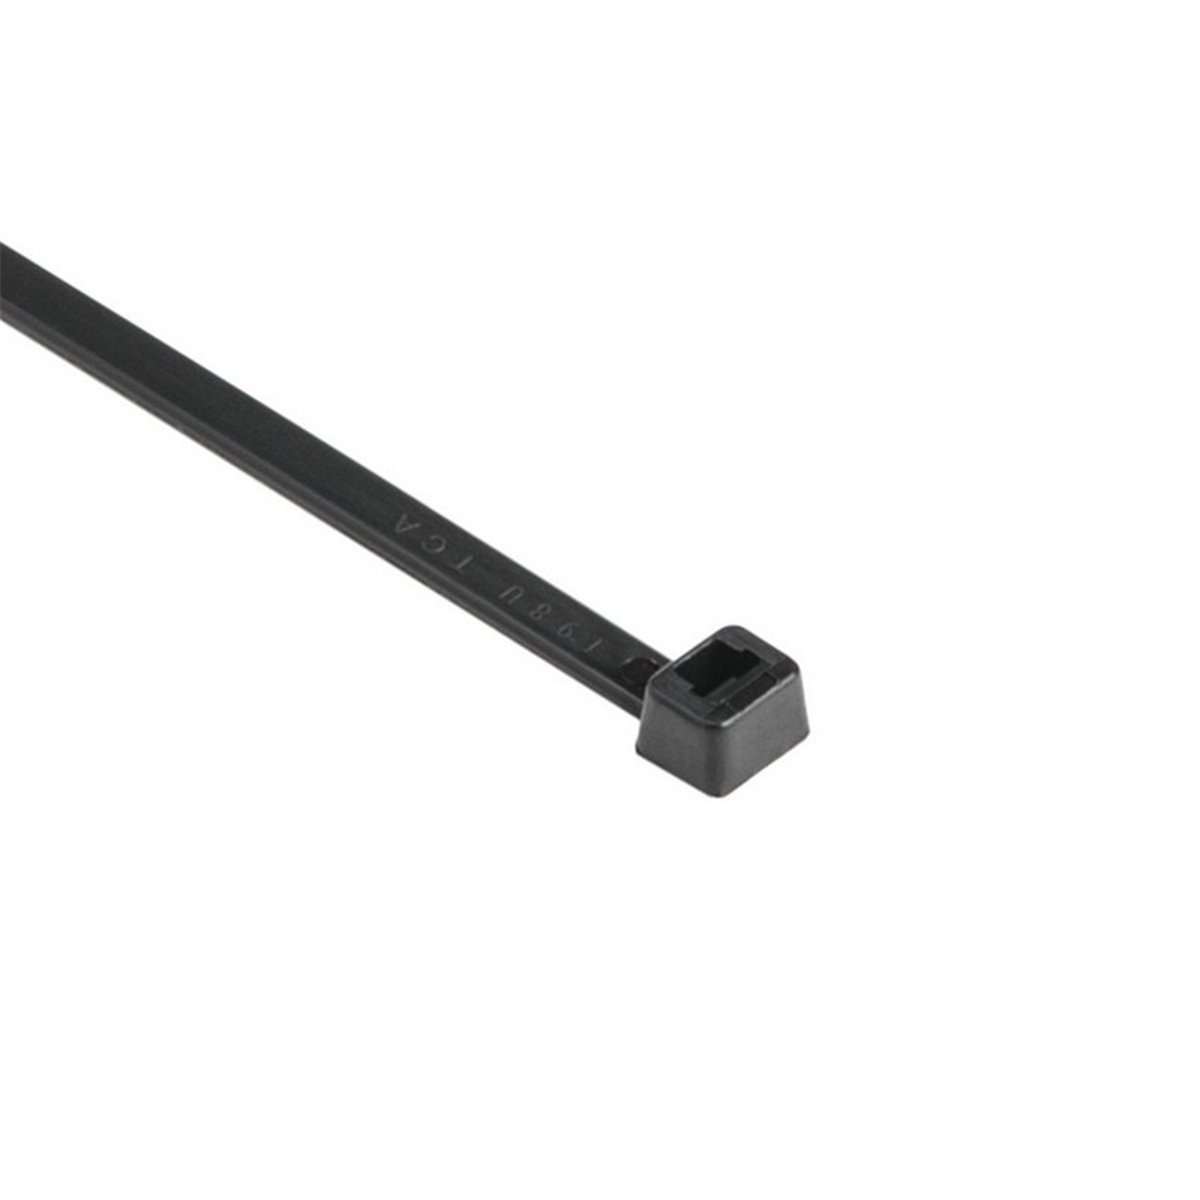 Cable tie T150L-PA66-BK, 8.9x820mm, black, 25 pcs. HellermannTyton